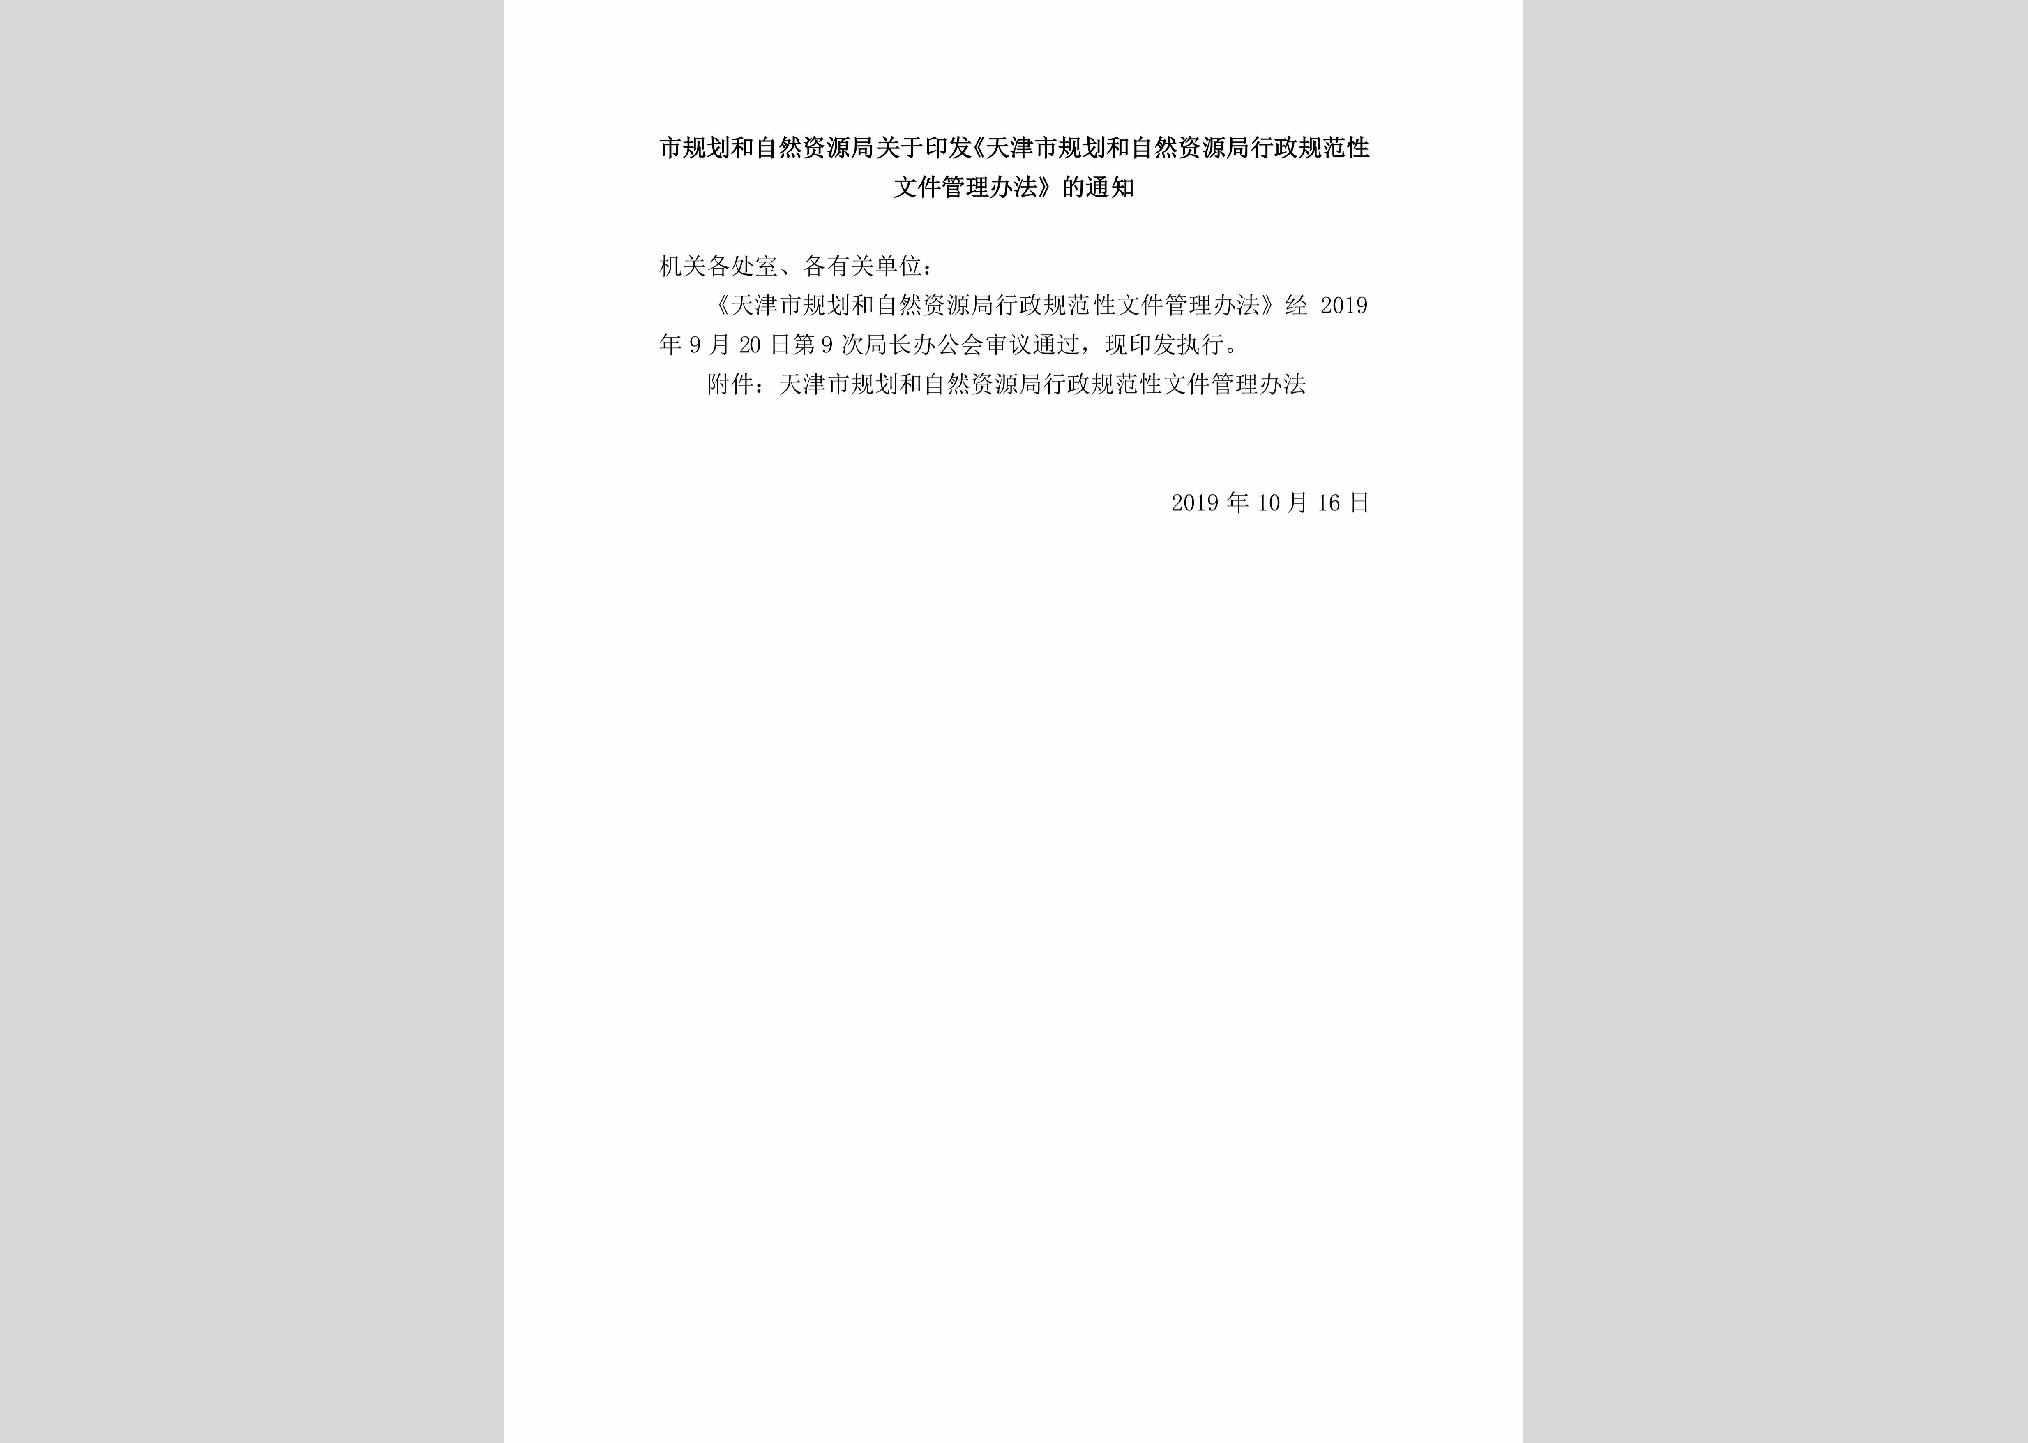 TJSGHHZR：市规划和自然资源局关于印发《天津市规划和自然资源局行政规范性文件管理办法》的通知